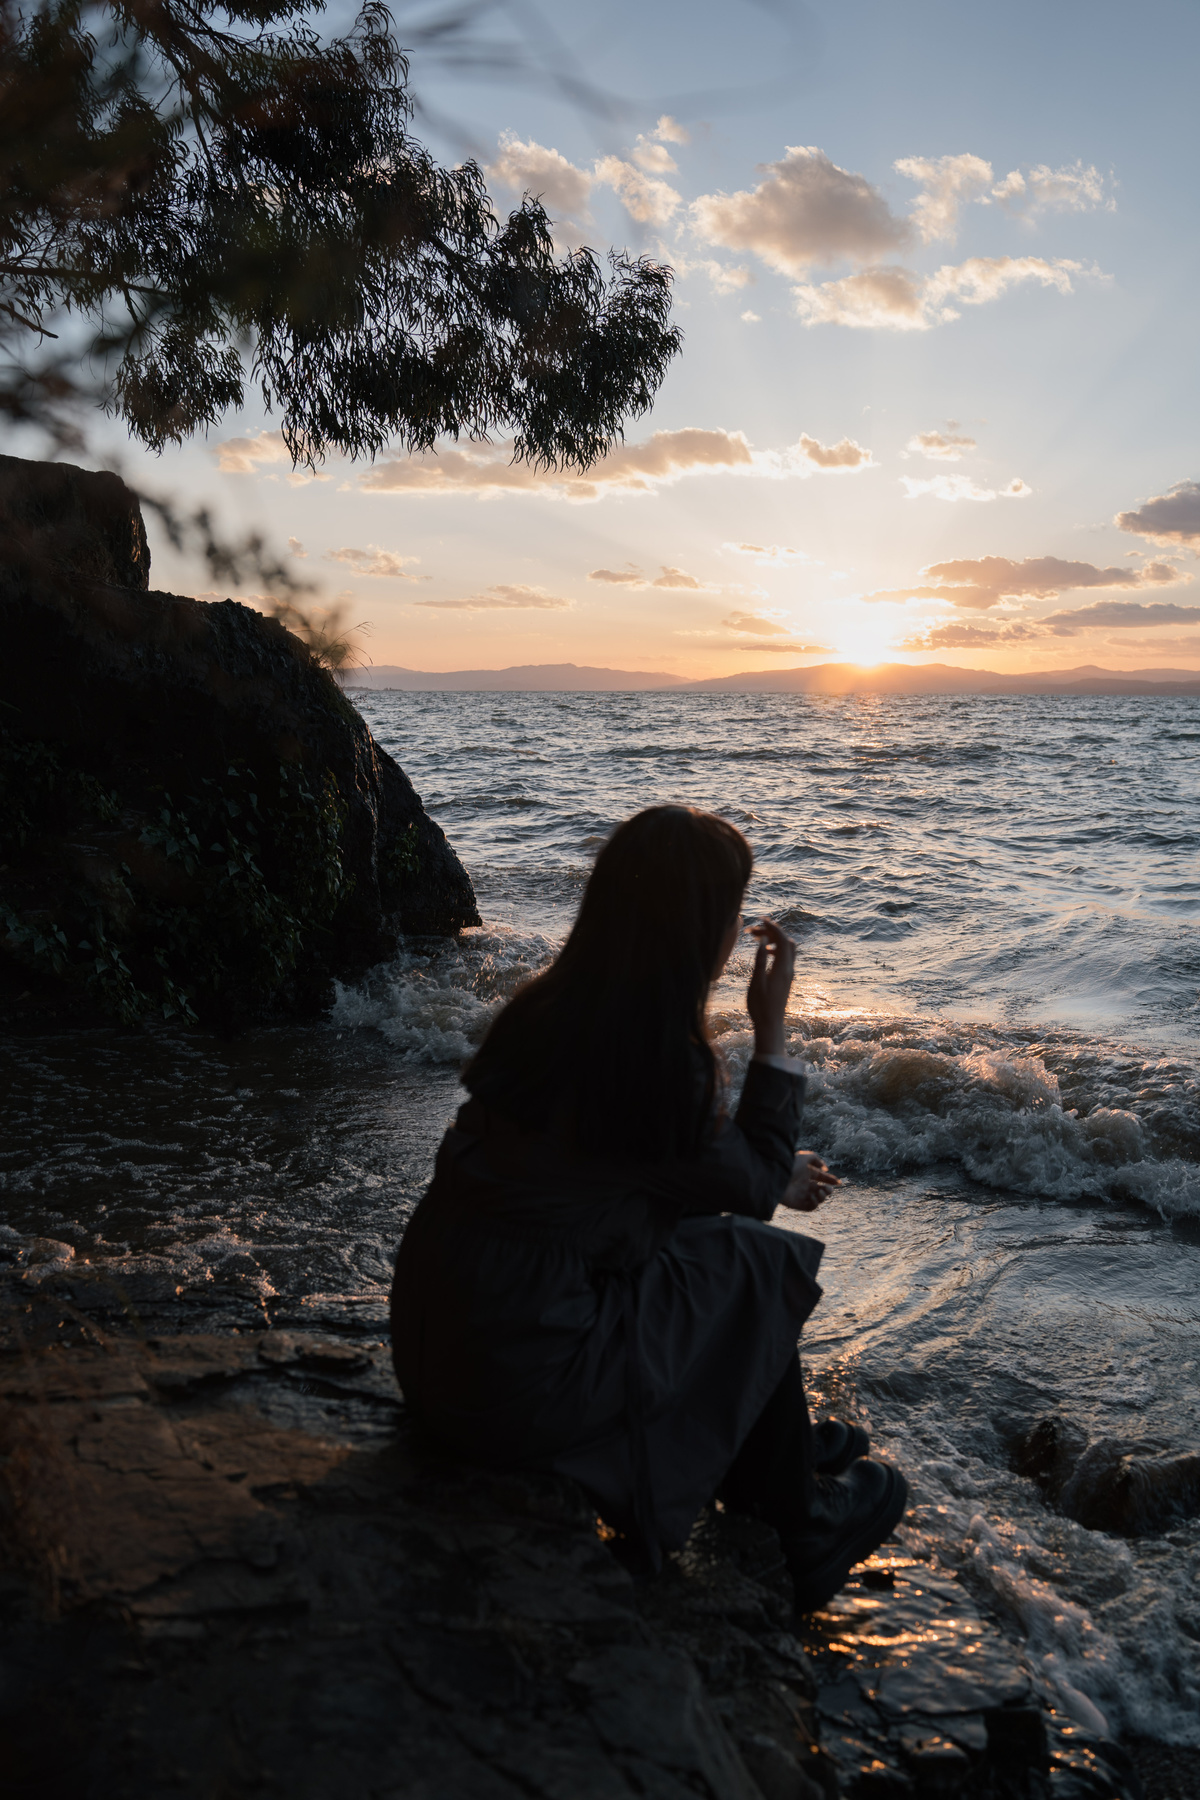 当太阳落山时 一名年轻女子坐在海边的岩石上 另一个人在拍照